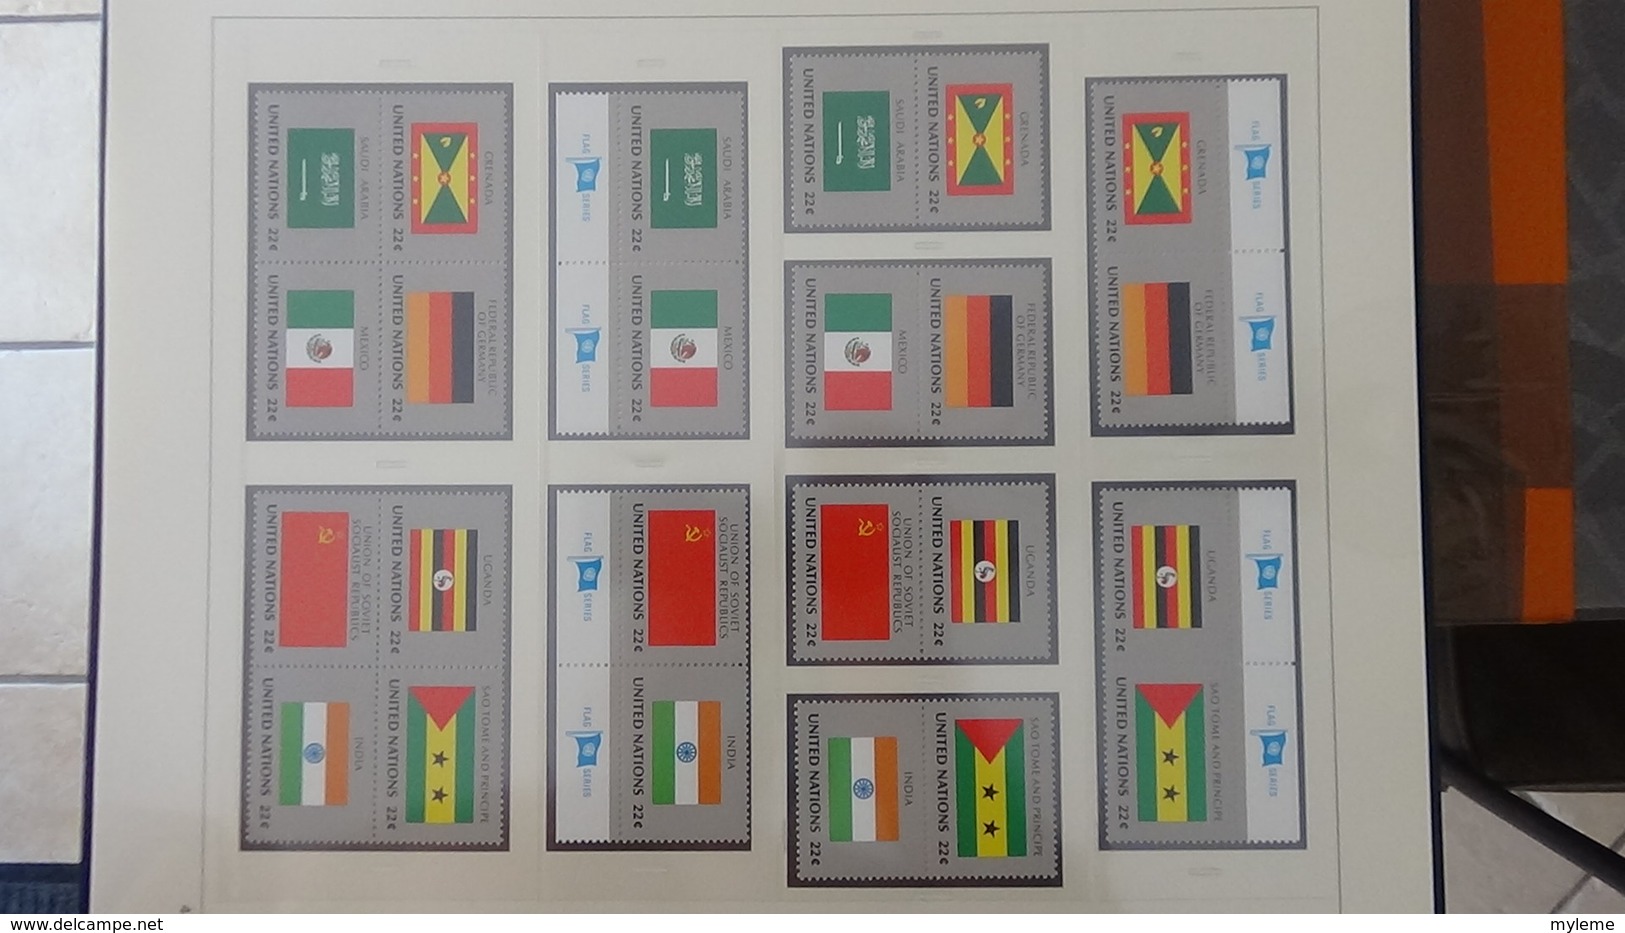 Grosse collection Nations Unies en SAFE avec étui série drapeaux en blocs et timbres ** complet.. A saisir !!!